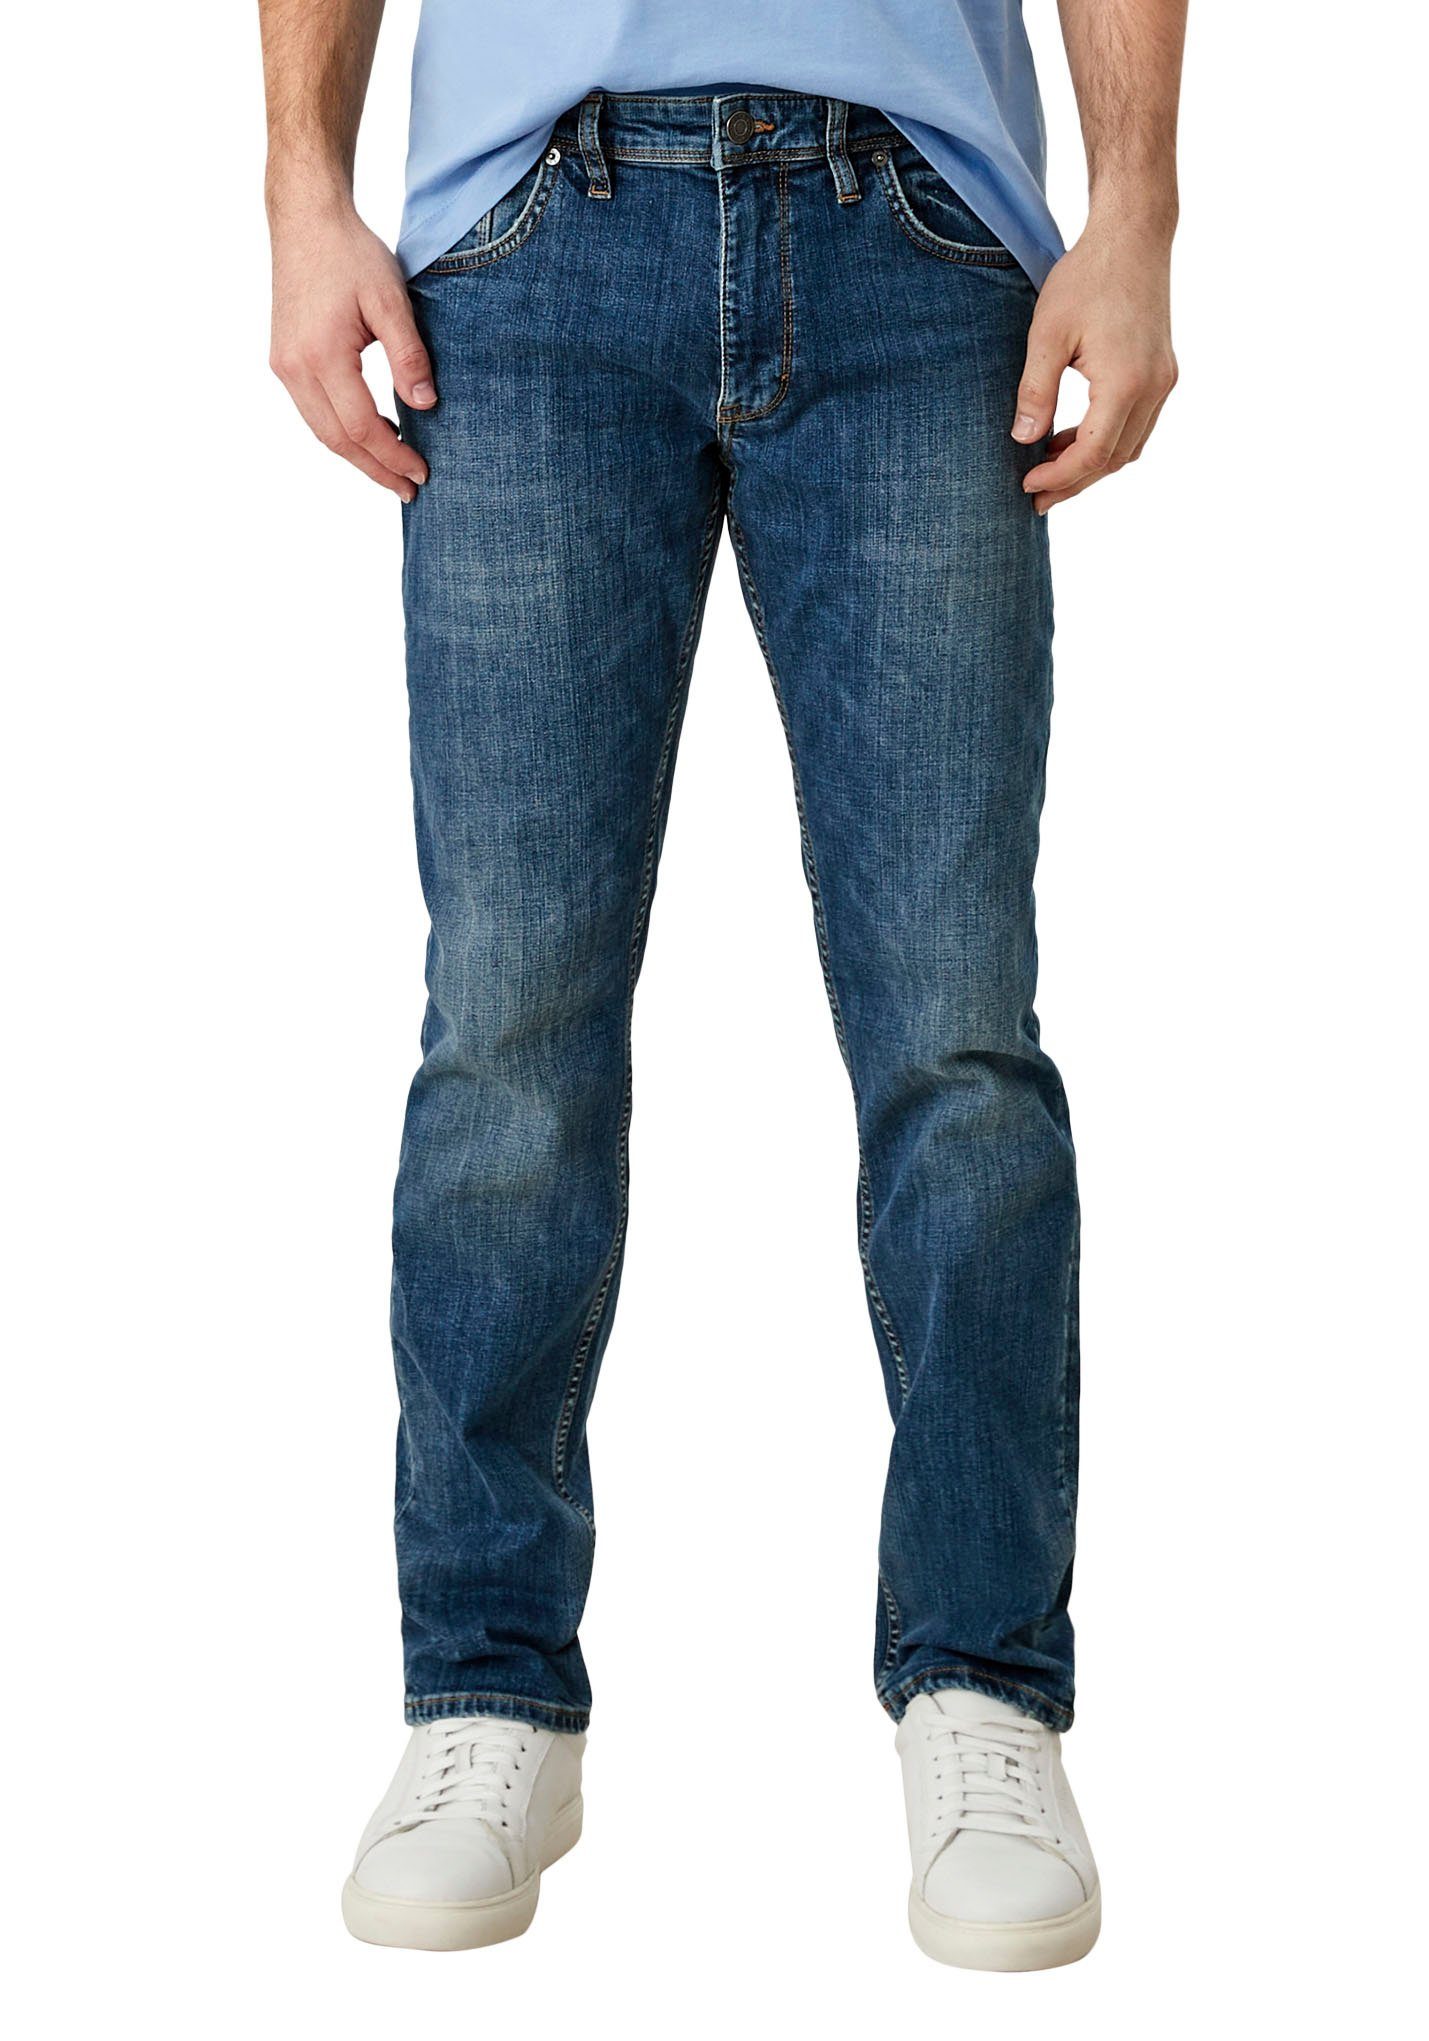 s.Oliver 5-Pocket-Jeans Waschung authentischer ozeanblau mit